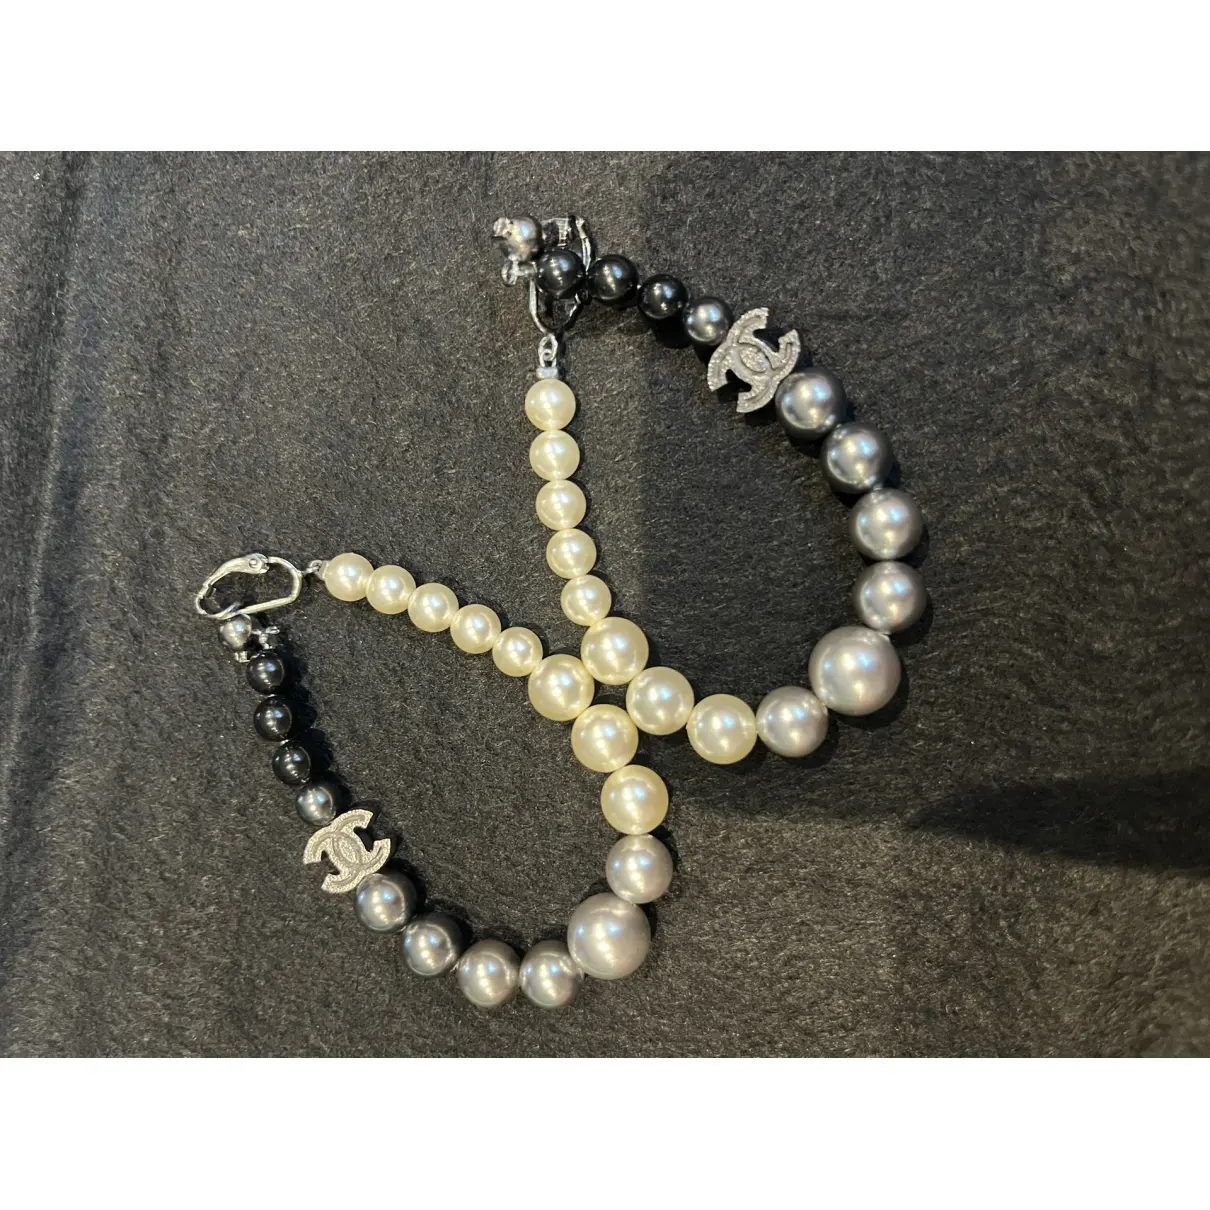 Buy Chanel Pearl earrings online